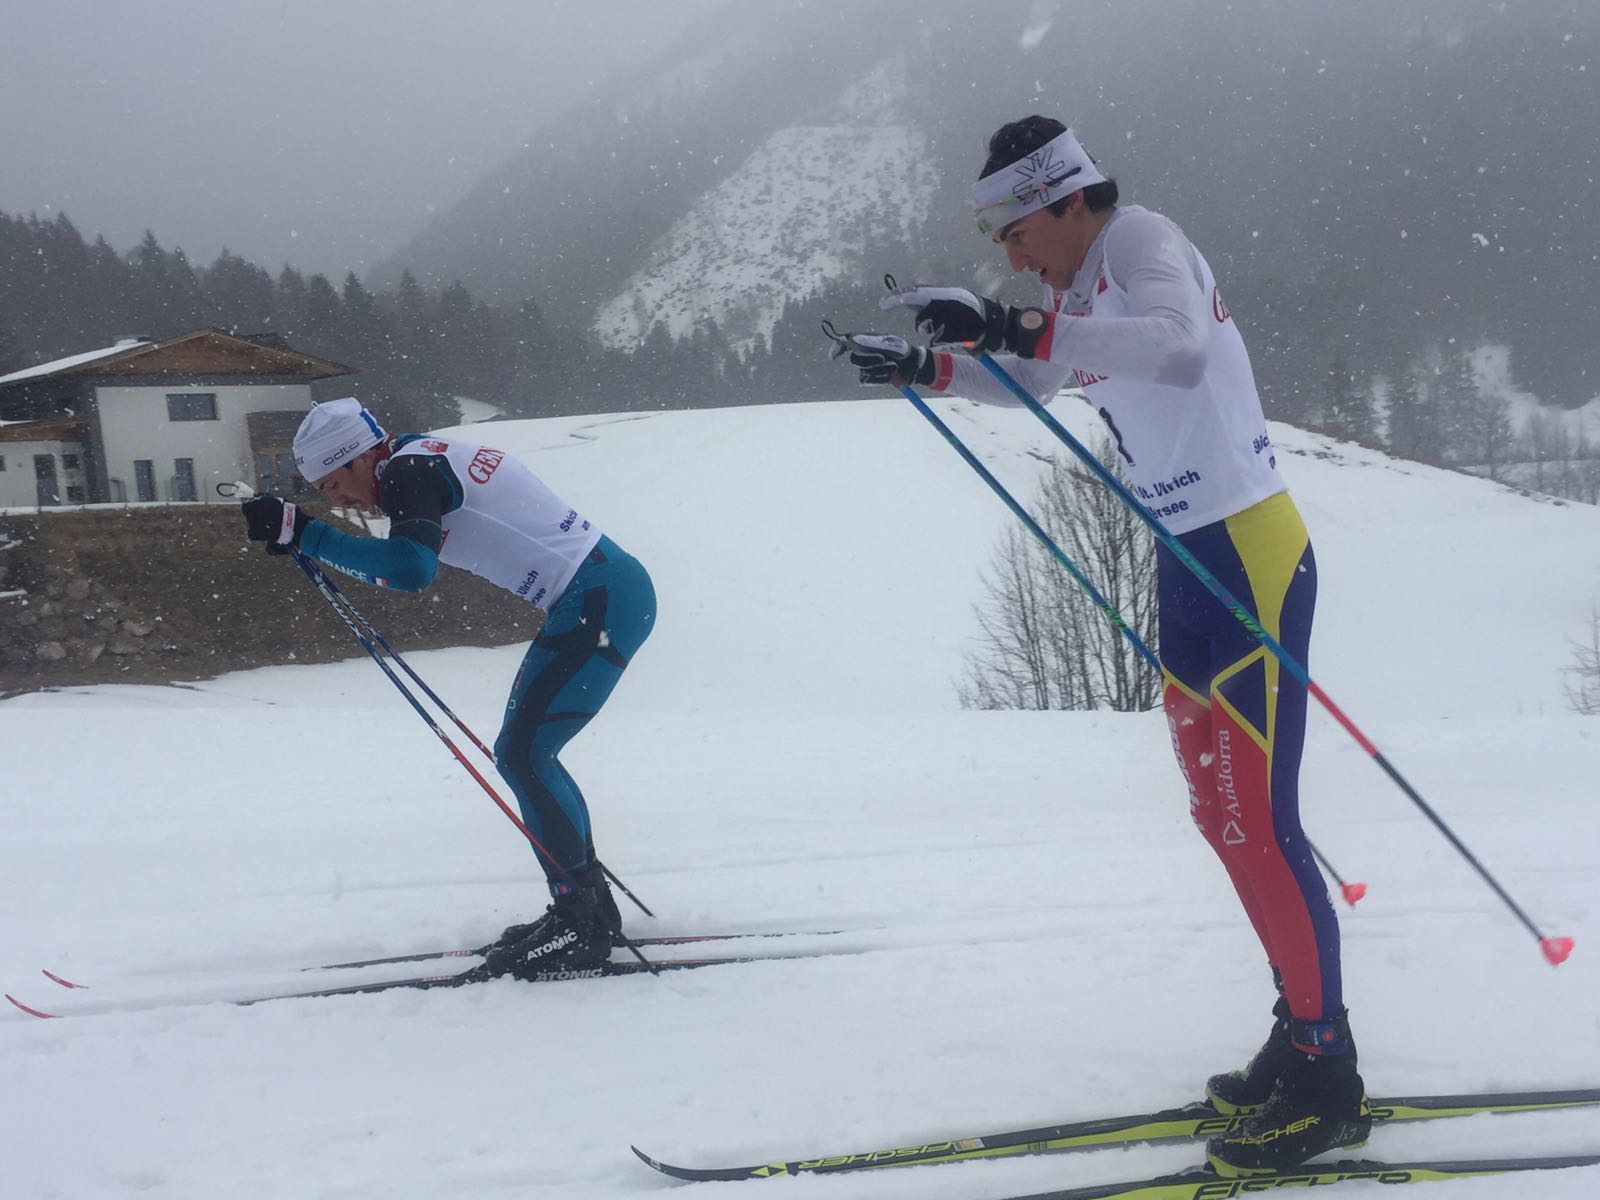 En esquí de fons, Irineu Esteve ha aconseguit el millor resultat 